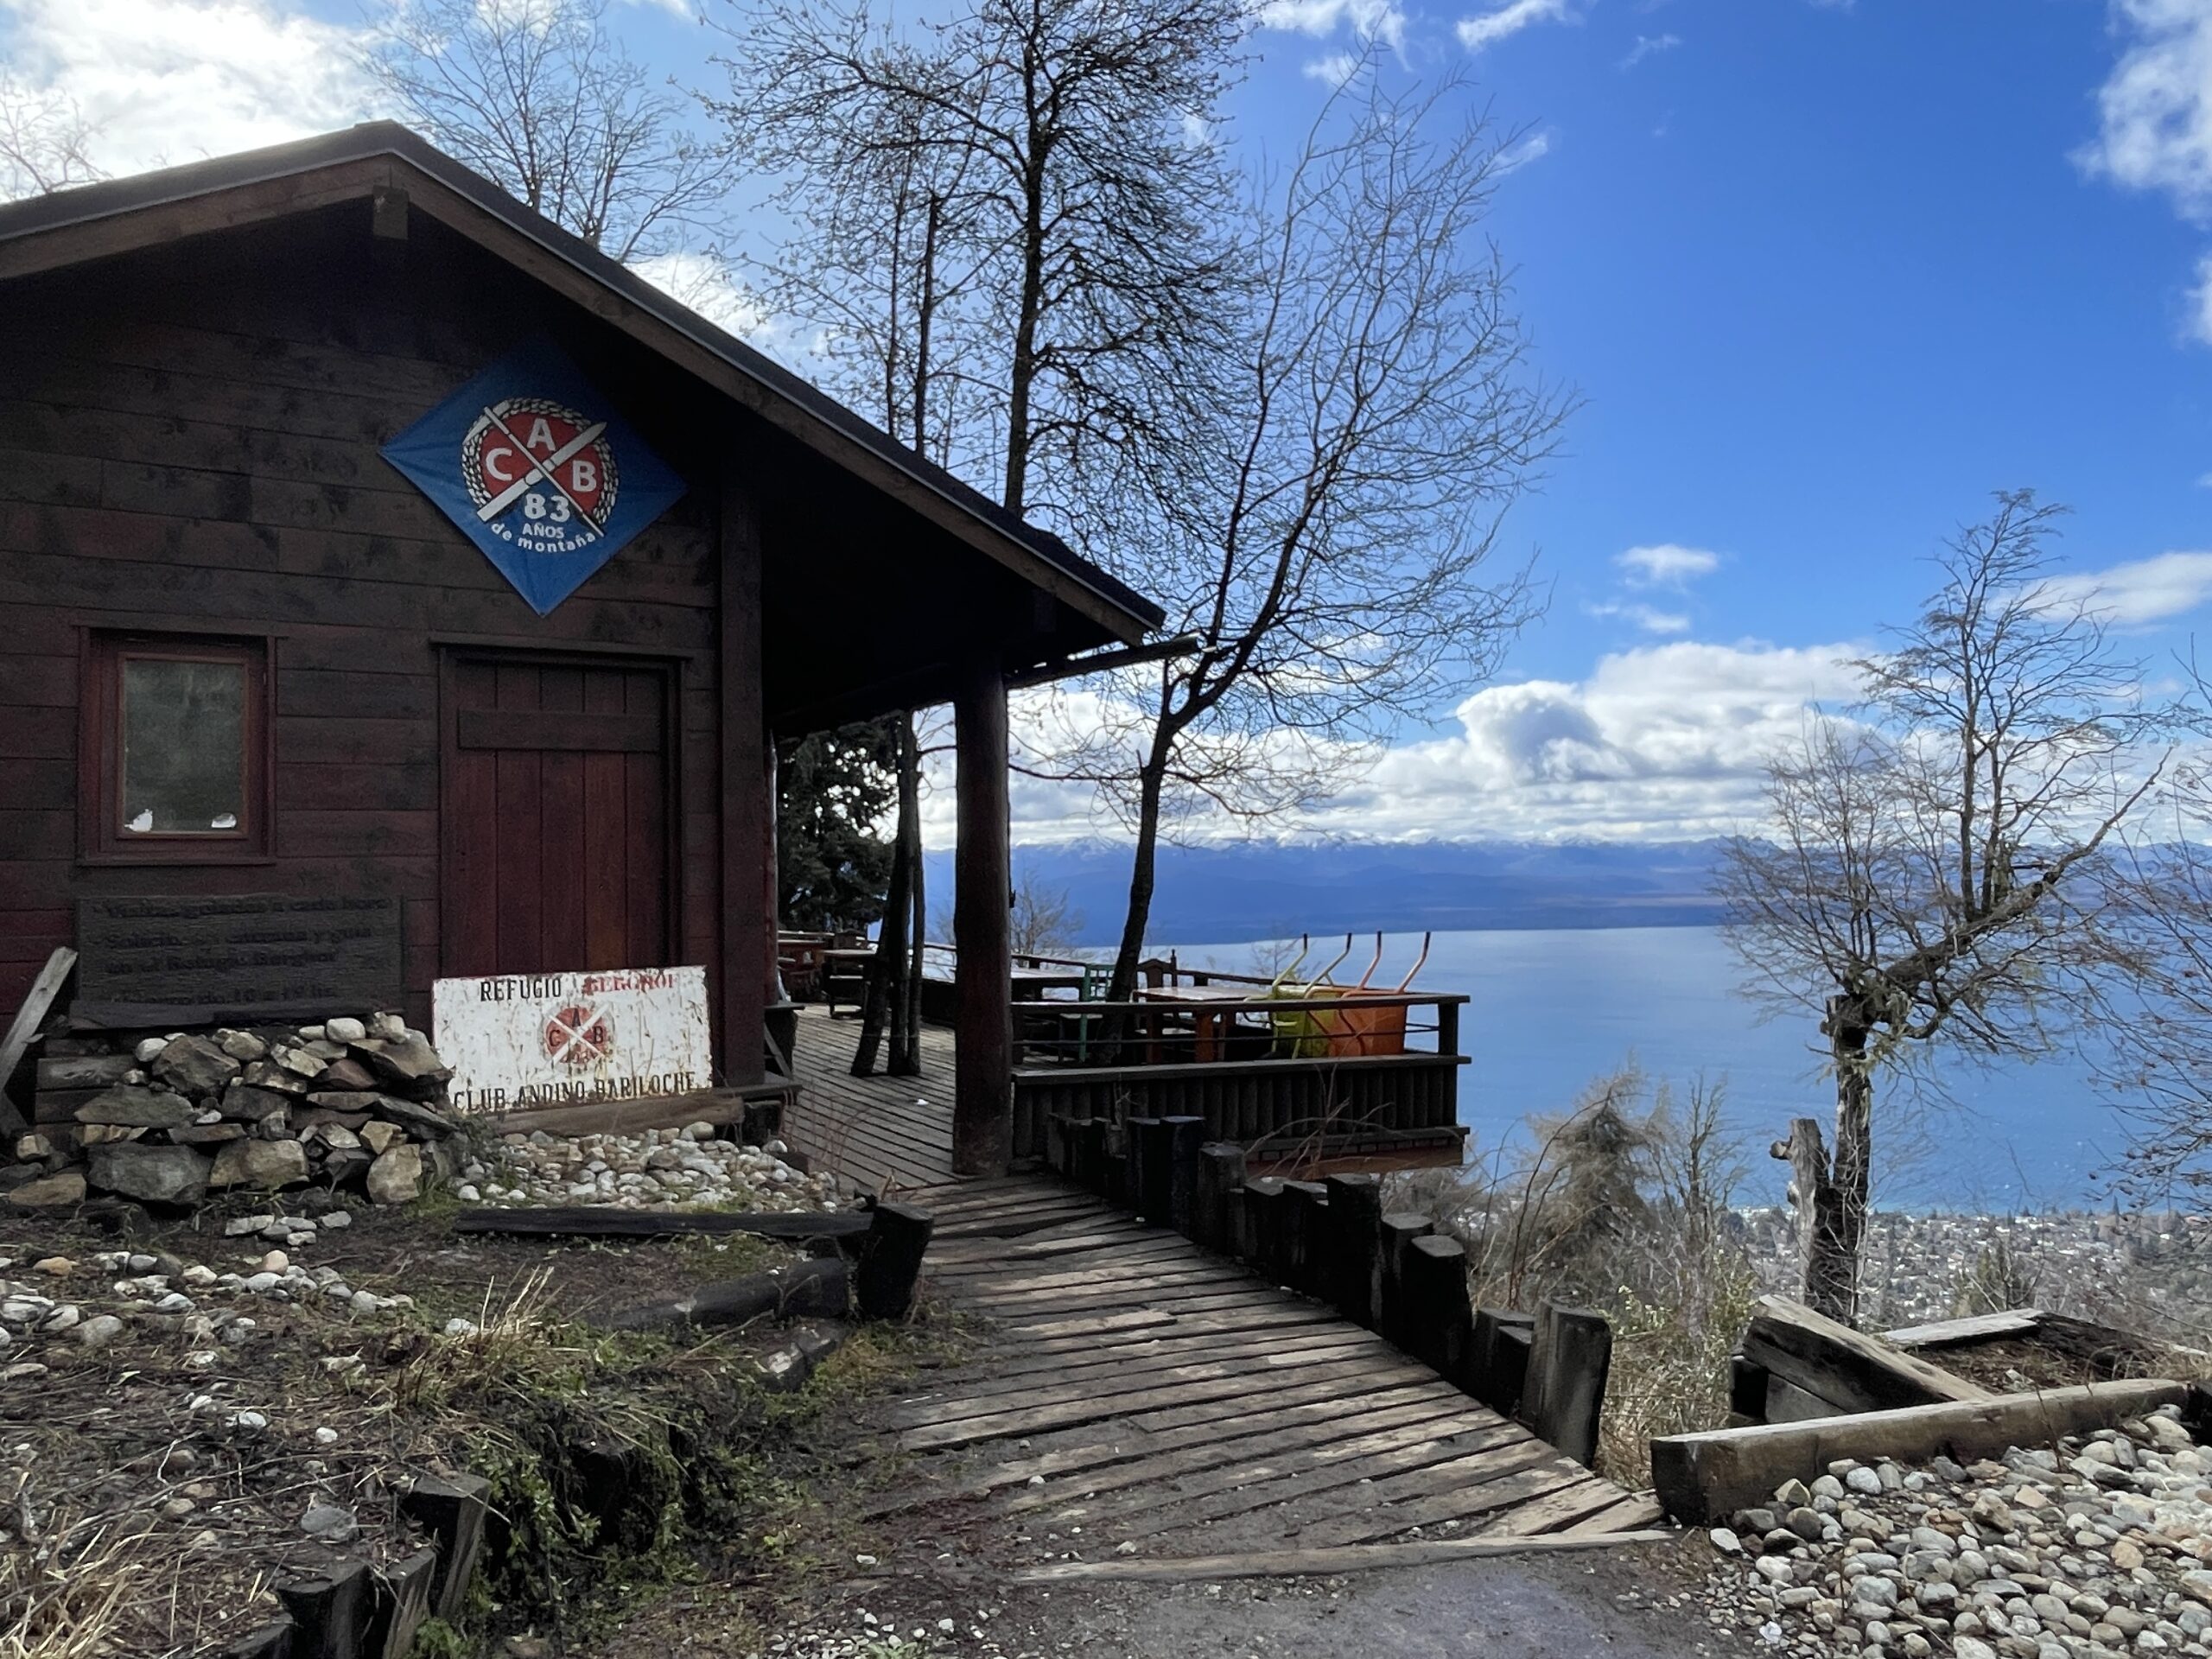 Bariloche’s Trekking, Refugios and Club Andino